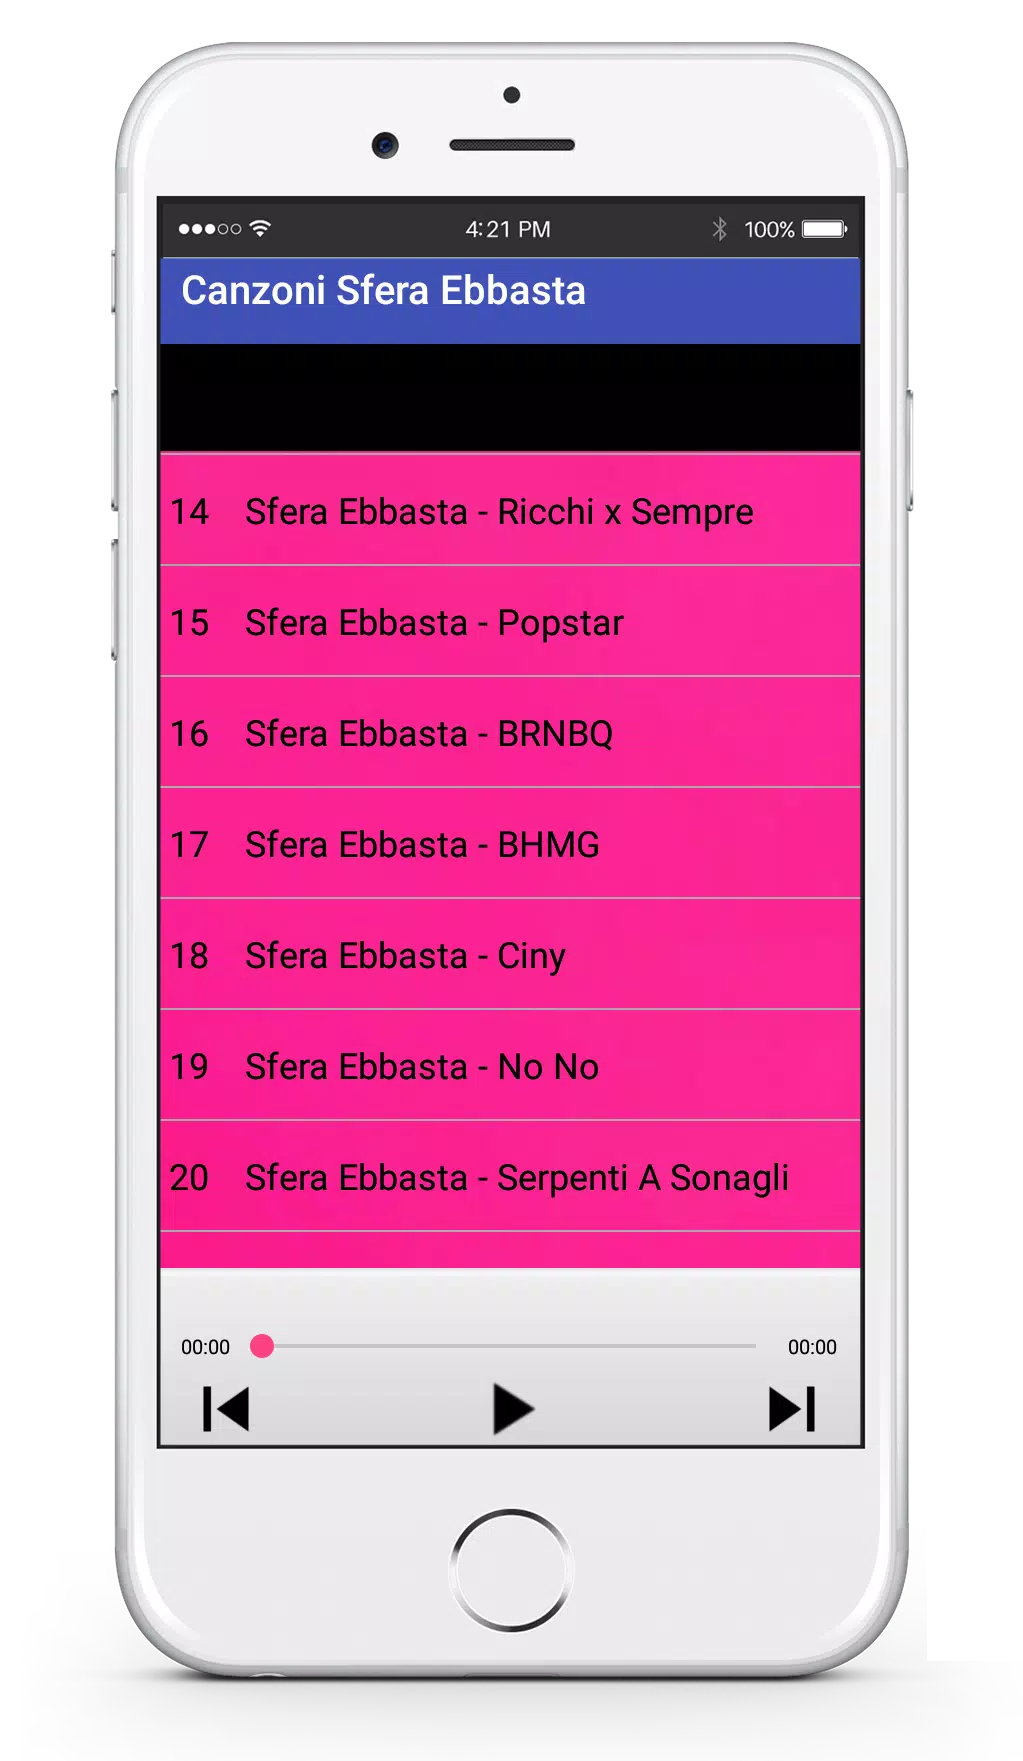 Canzoni Sfera Ebbasta MP3 APK for Android Download